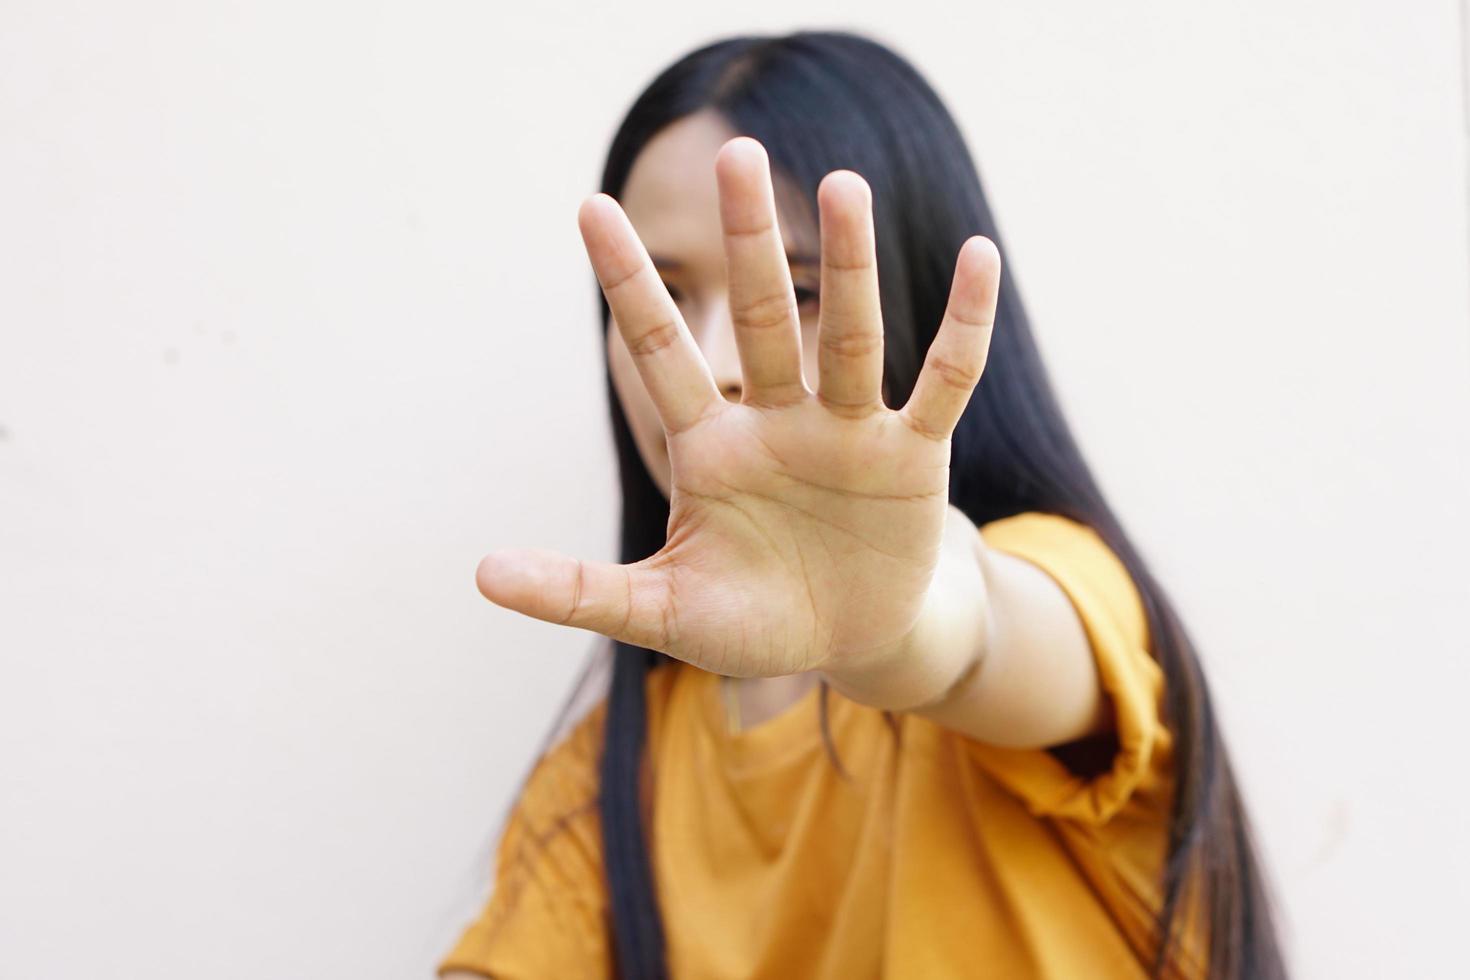 Frau hob ihre Hand, um davon abzubringen, Kampagne stoppt Gewalt gegen Frauen foto